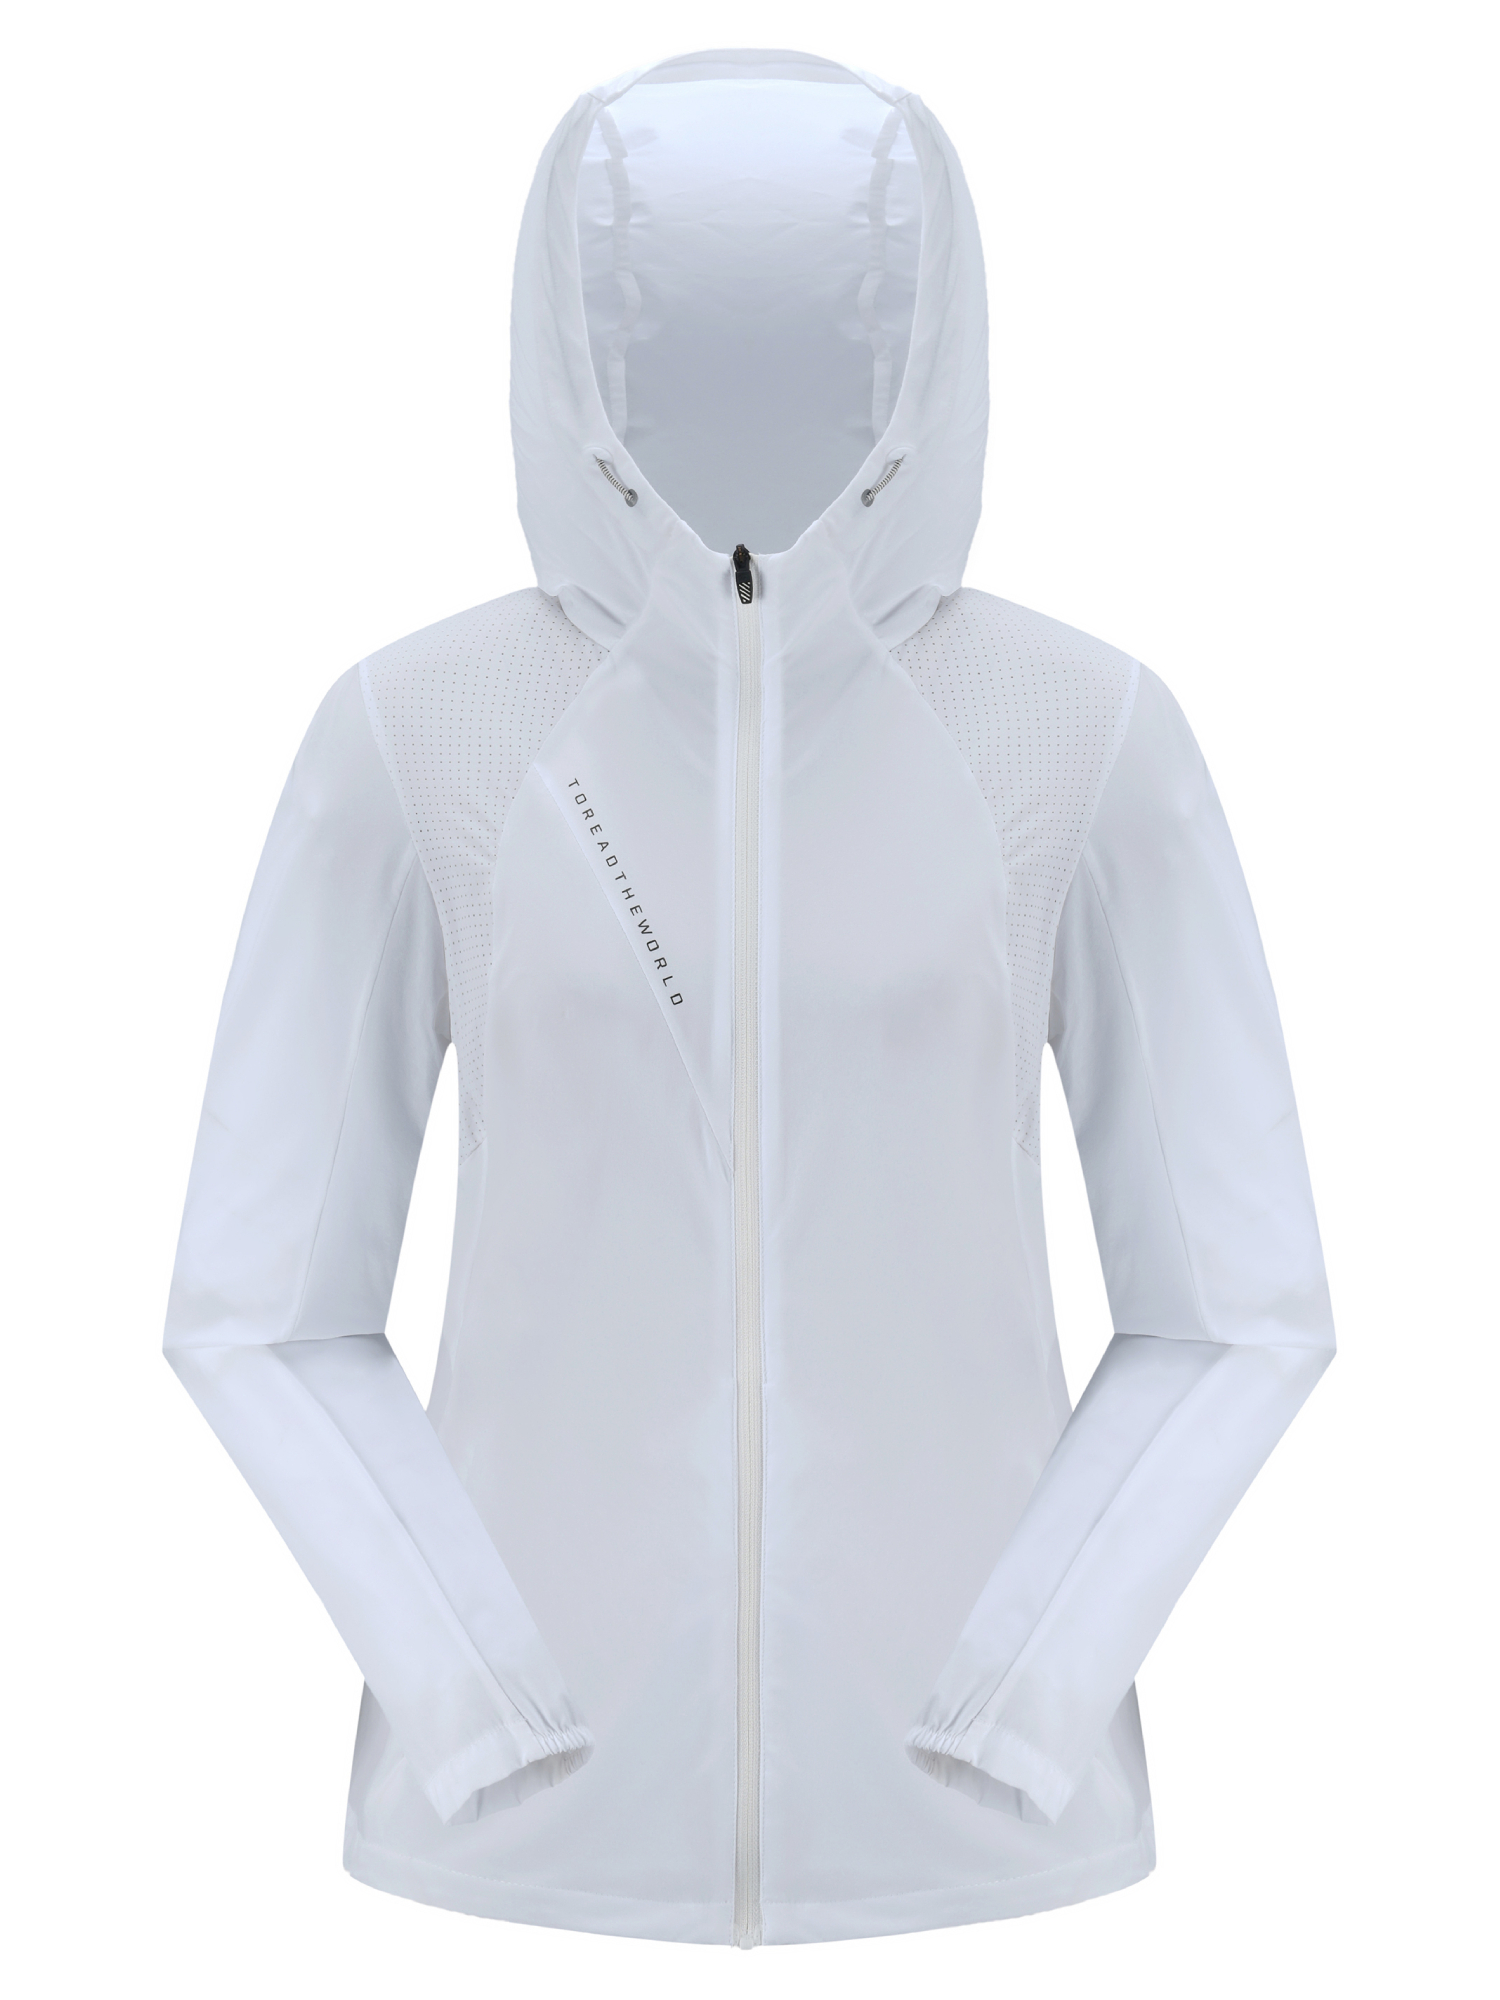 Спортивная куртка женская Toread Women's Running Training Jacket белая XS